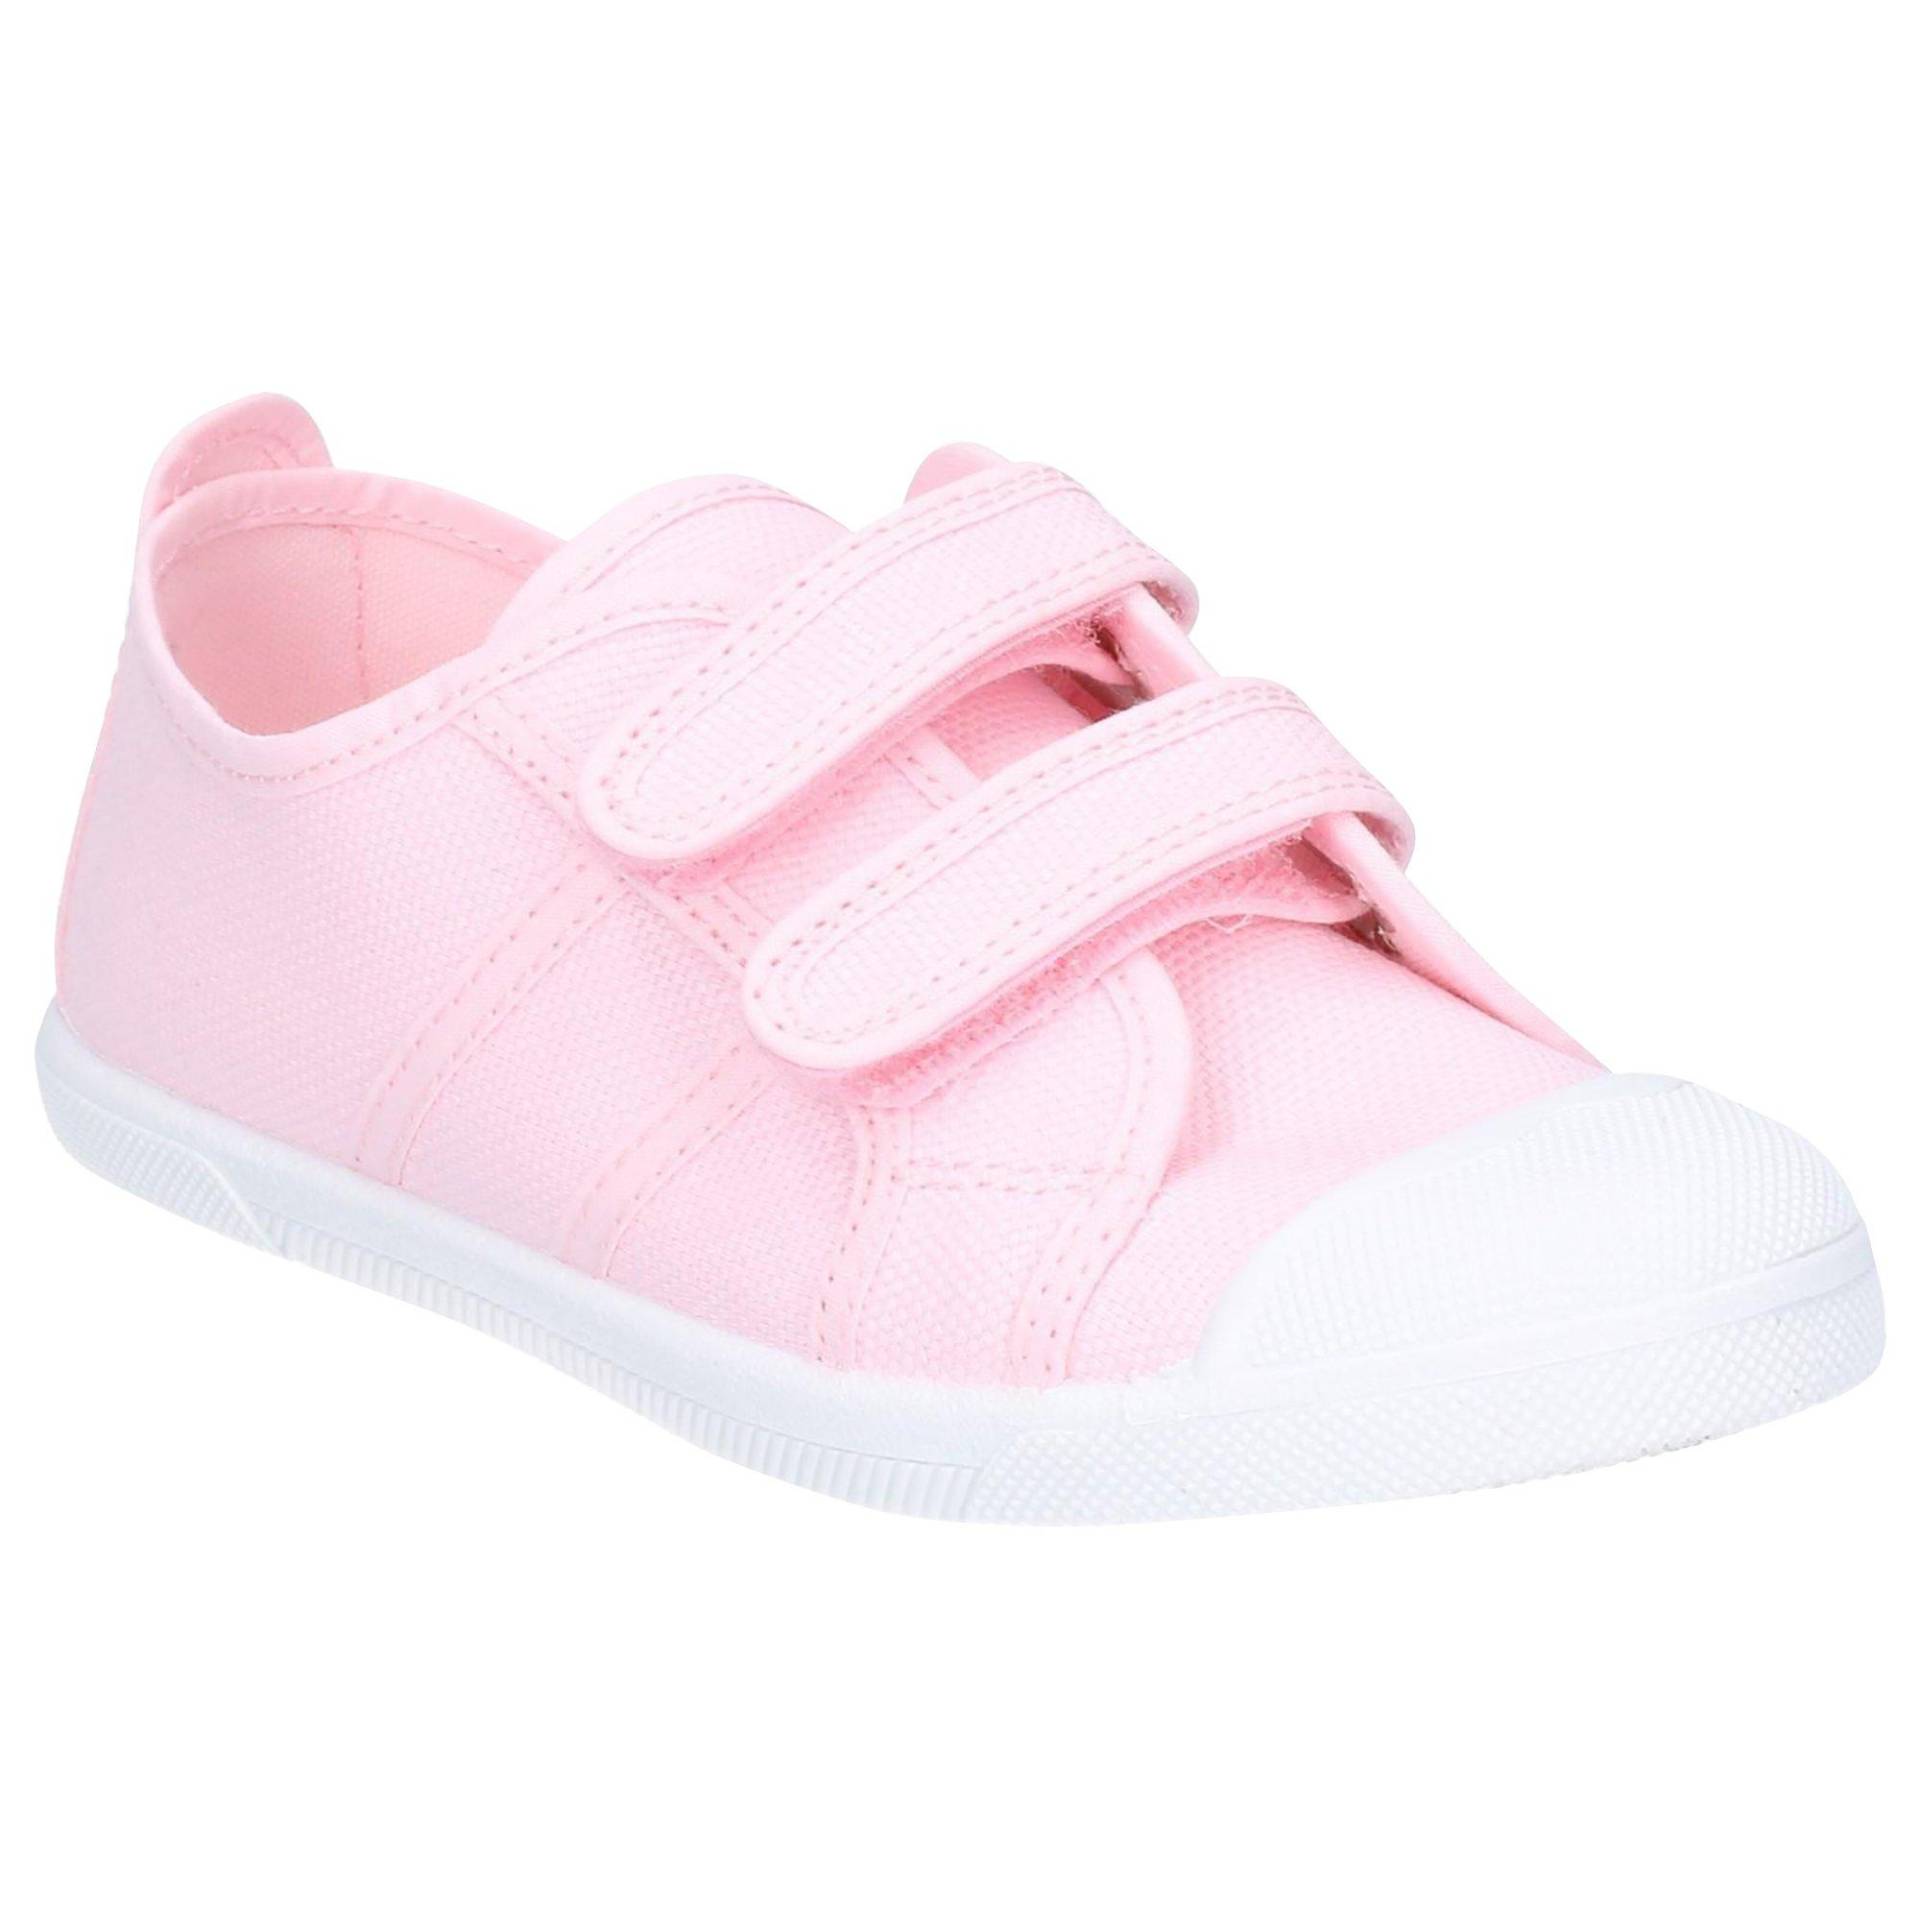 Schuhe Sasha Unisex Pink 34 von Flossy